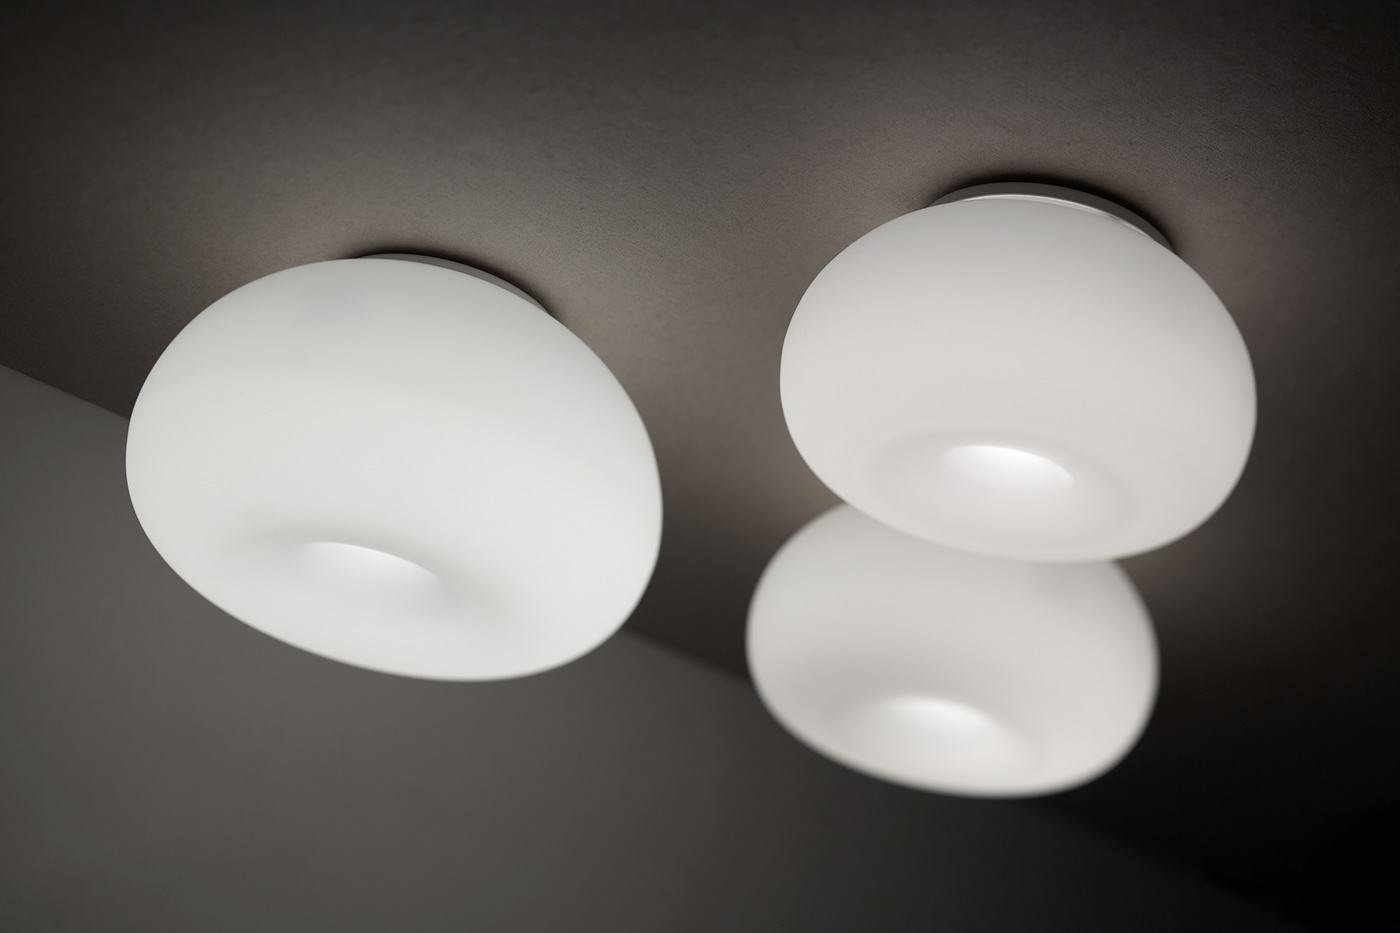 lighting lights lamps glass blown glass glass lights Lighting Design  product design  WALL  LIGHTS wall lights